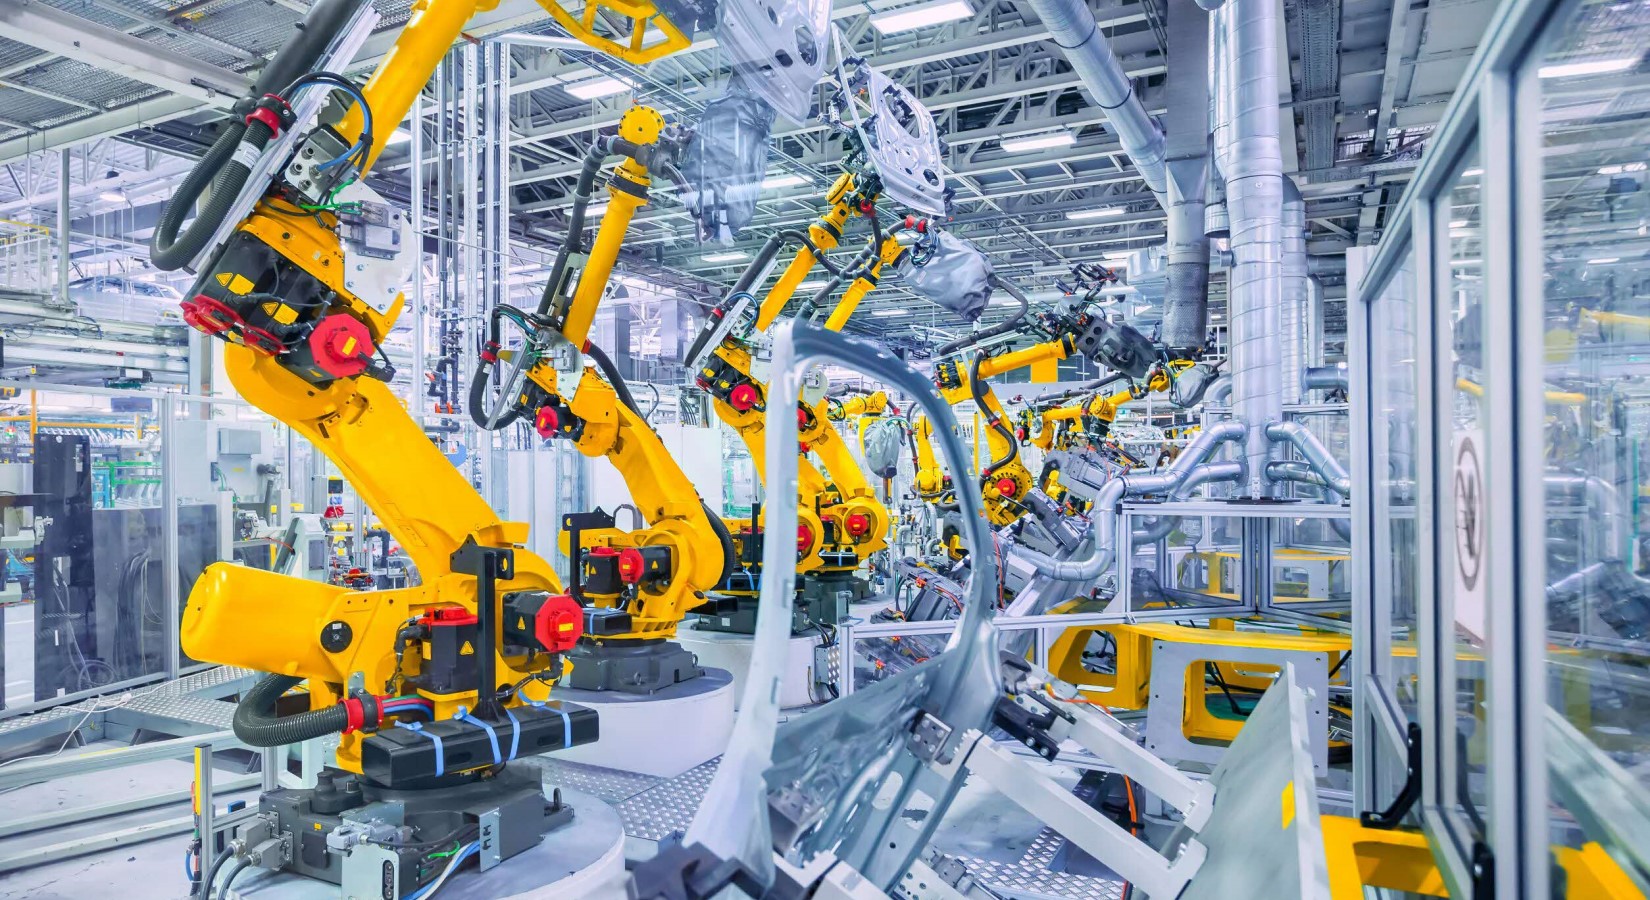 Robots in Koei Tool factory